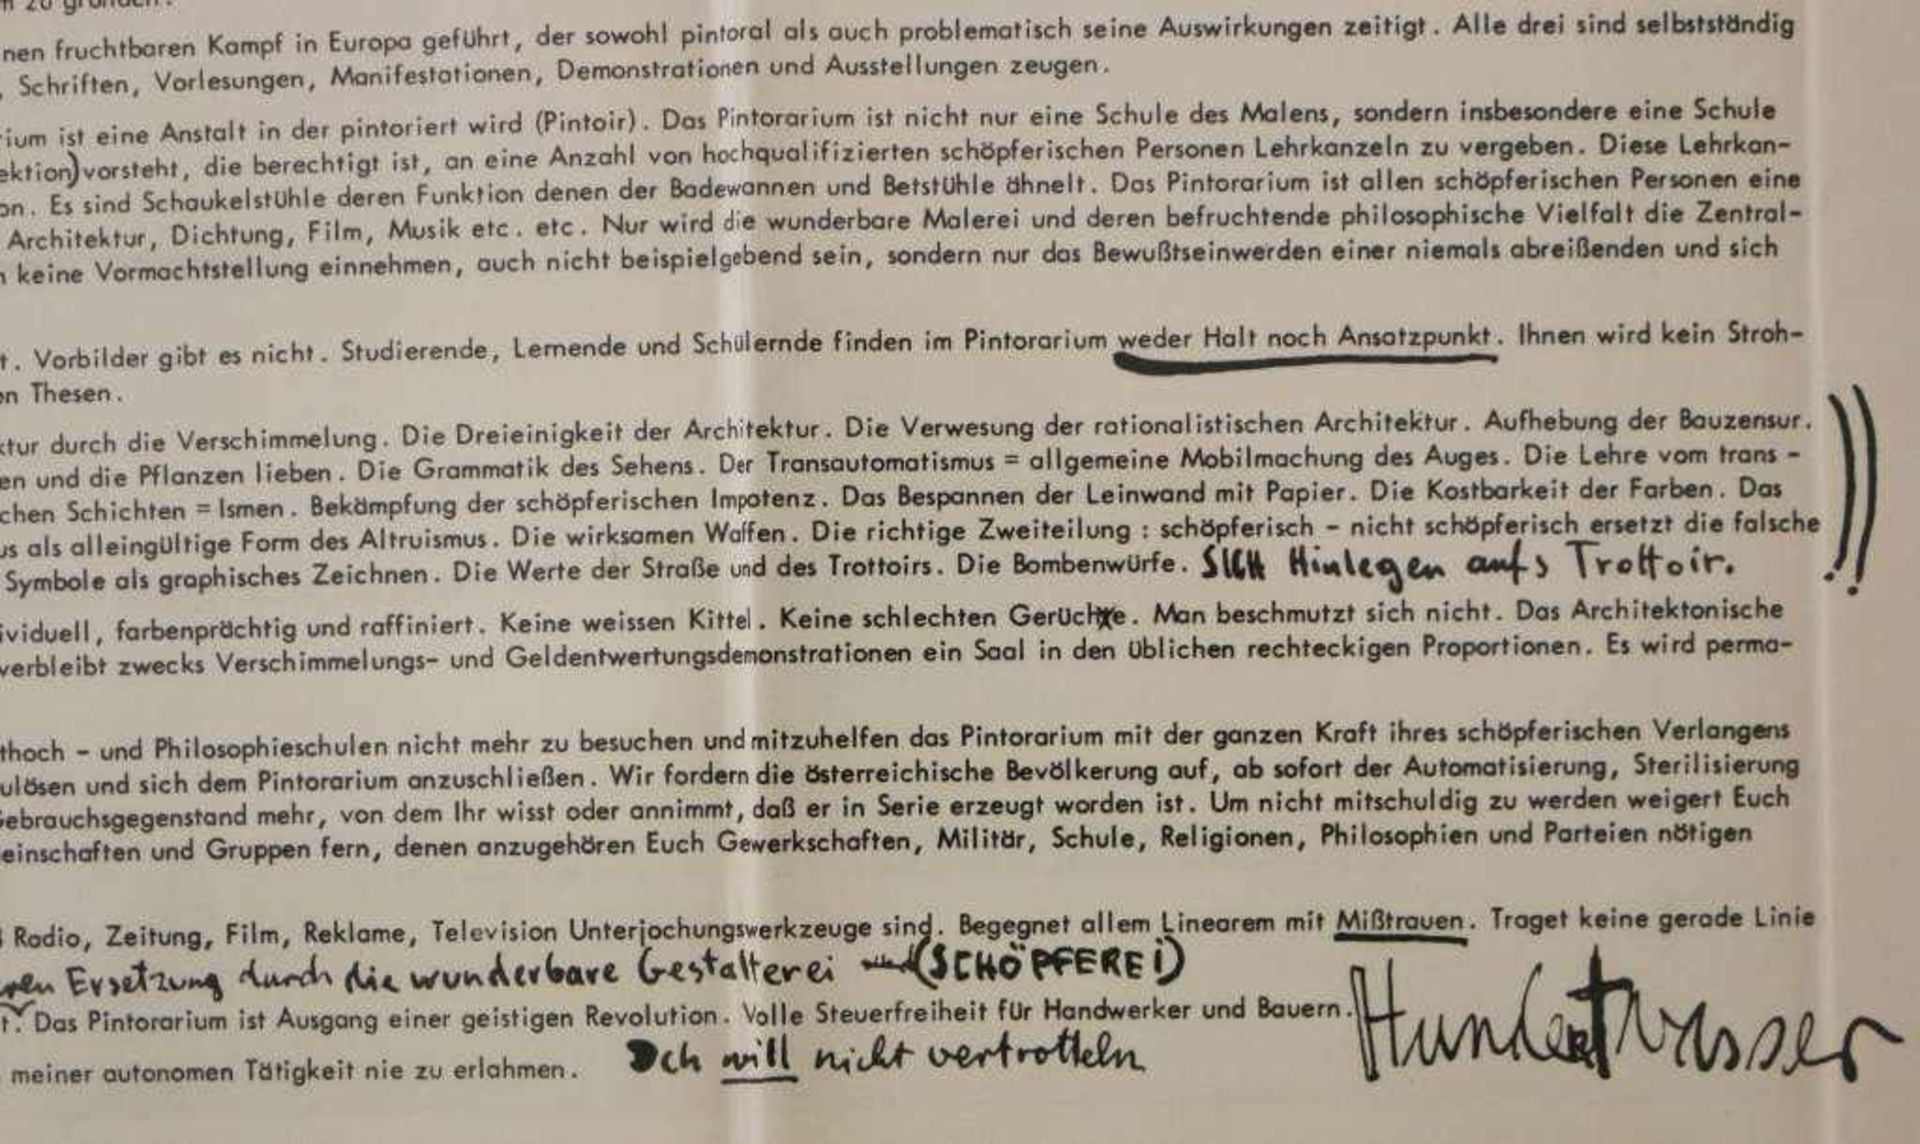 Arnulf RAINER (1929), Friedensreich Hundertwasser, Ernst Fuchs: Manifest zur Gründung des